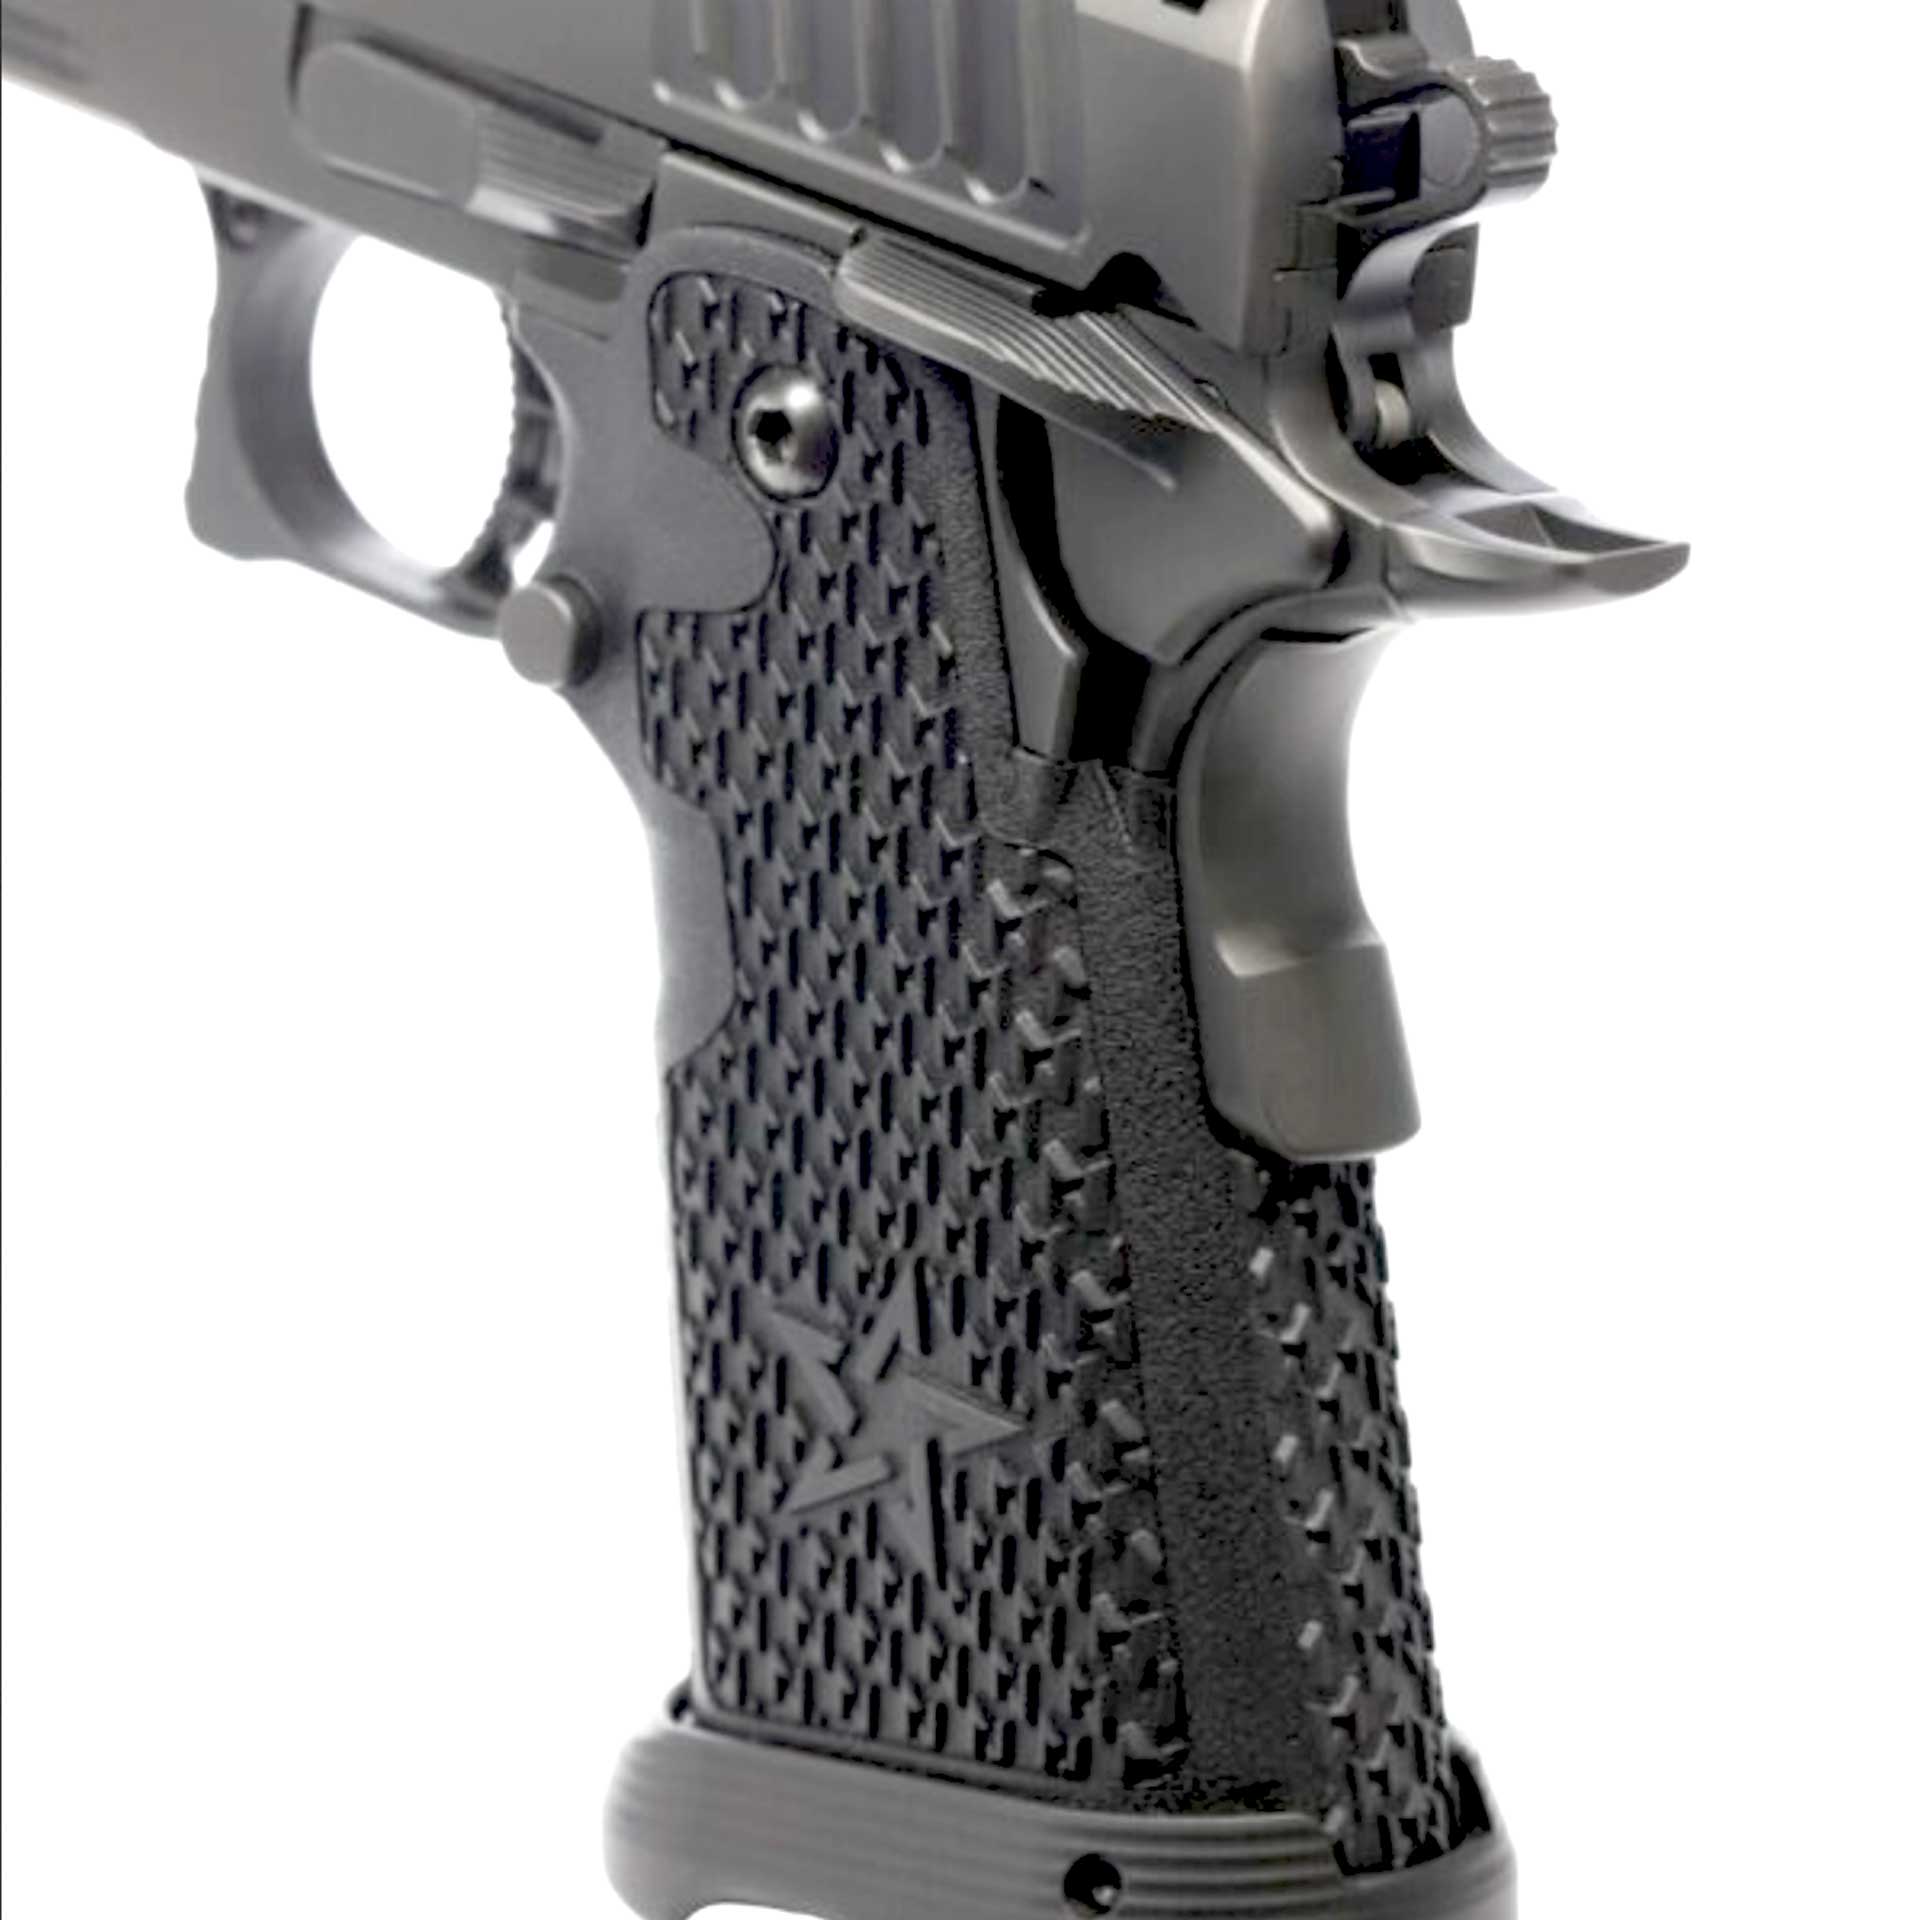 gun pistol grip plastic metal 1911 handgun staccato